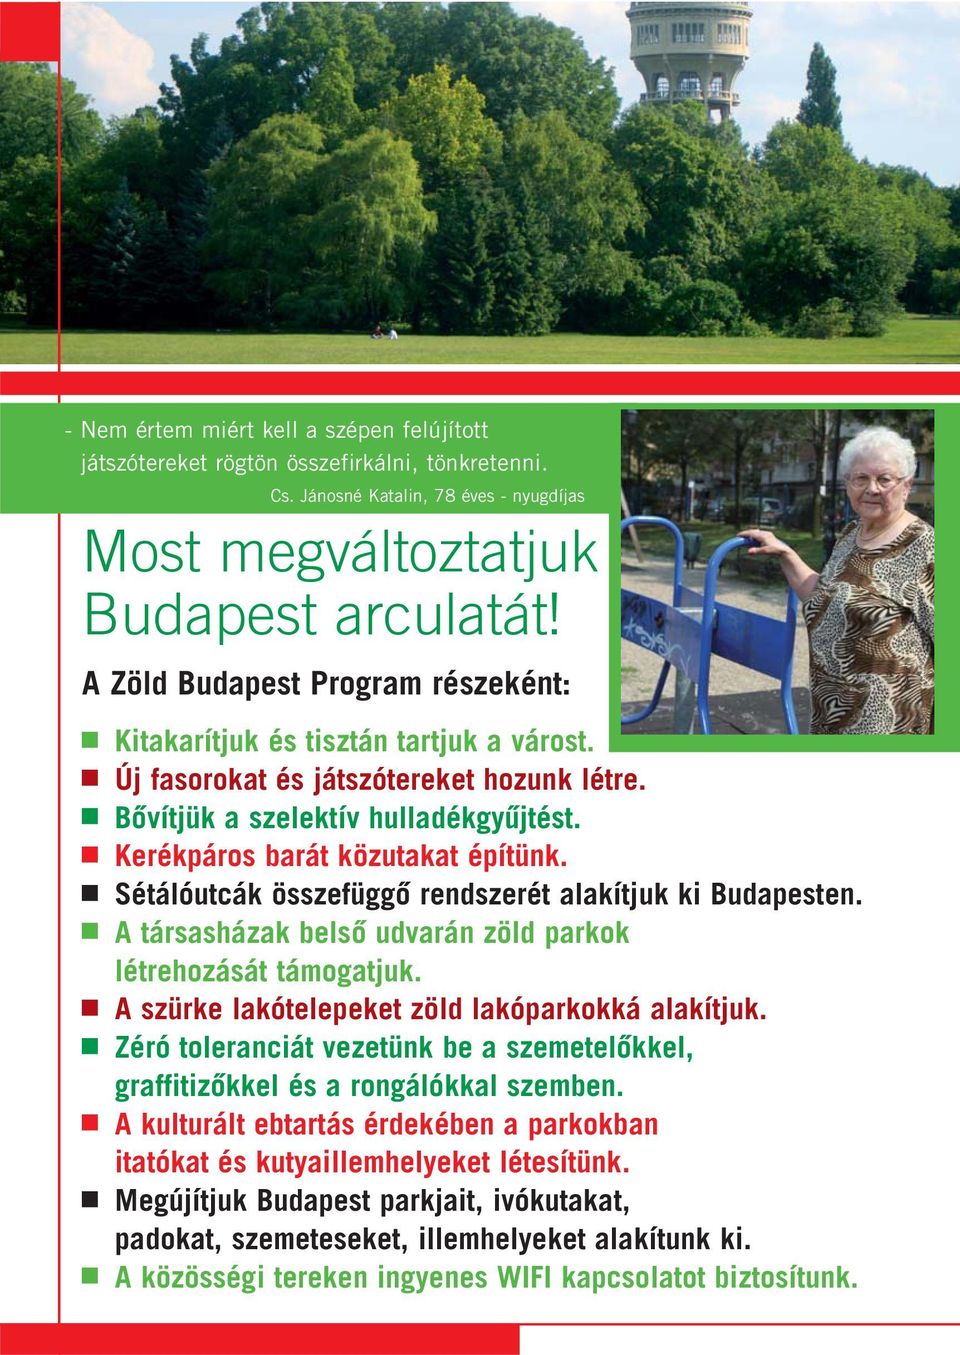 Sétálóutcák összefüggô rendszerét alakítjuk ki Budapesten. A társasházak belsô udvarán zöld parkok létrehozását támogatjuk. A szürke lakótelepeket zöld lakóparkokká alakítjuk.